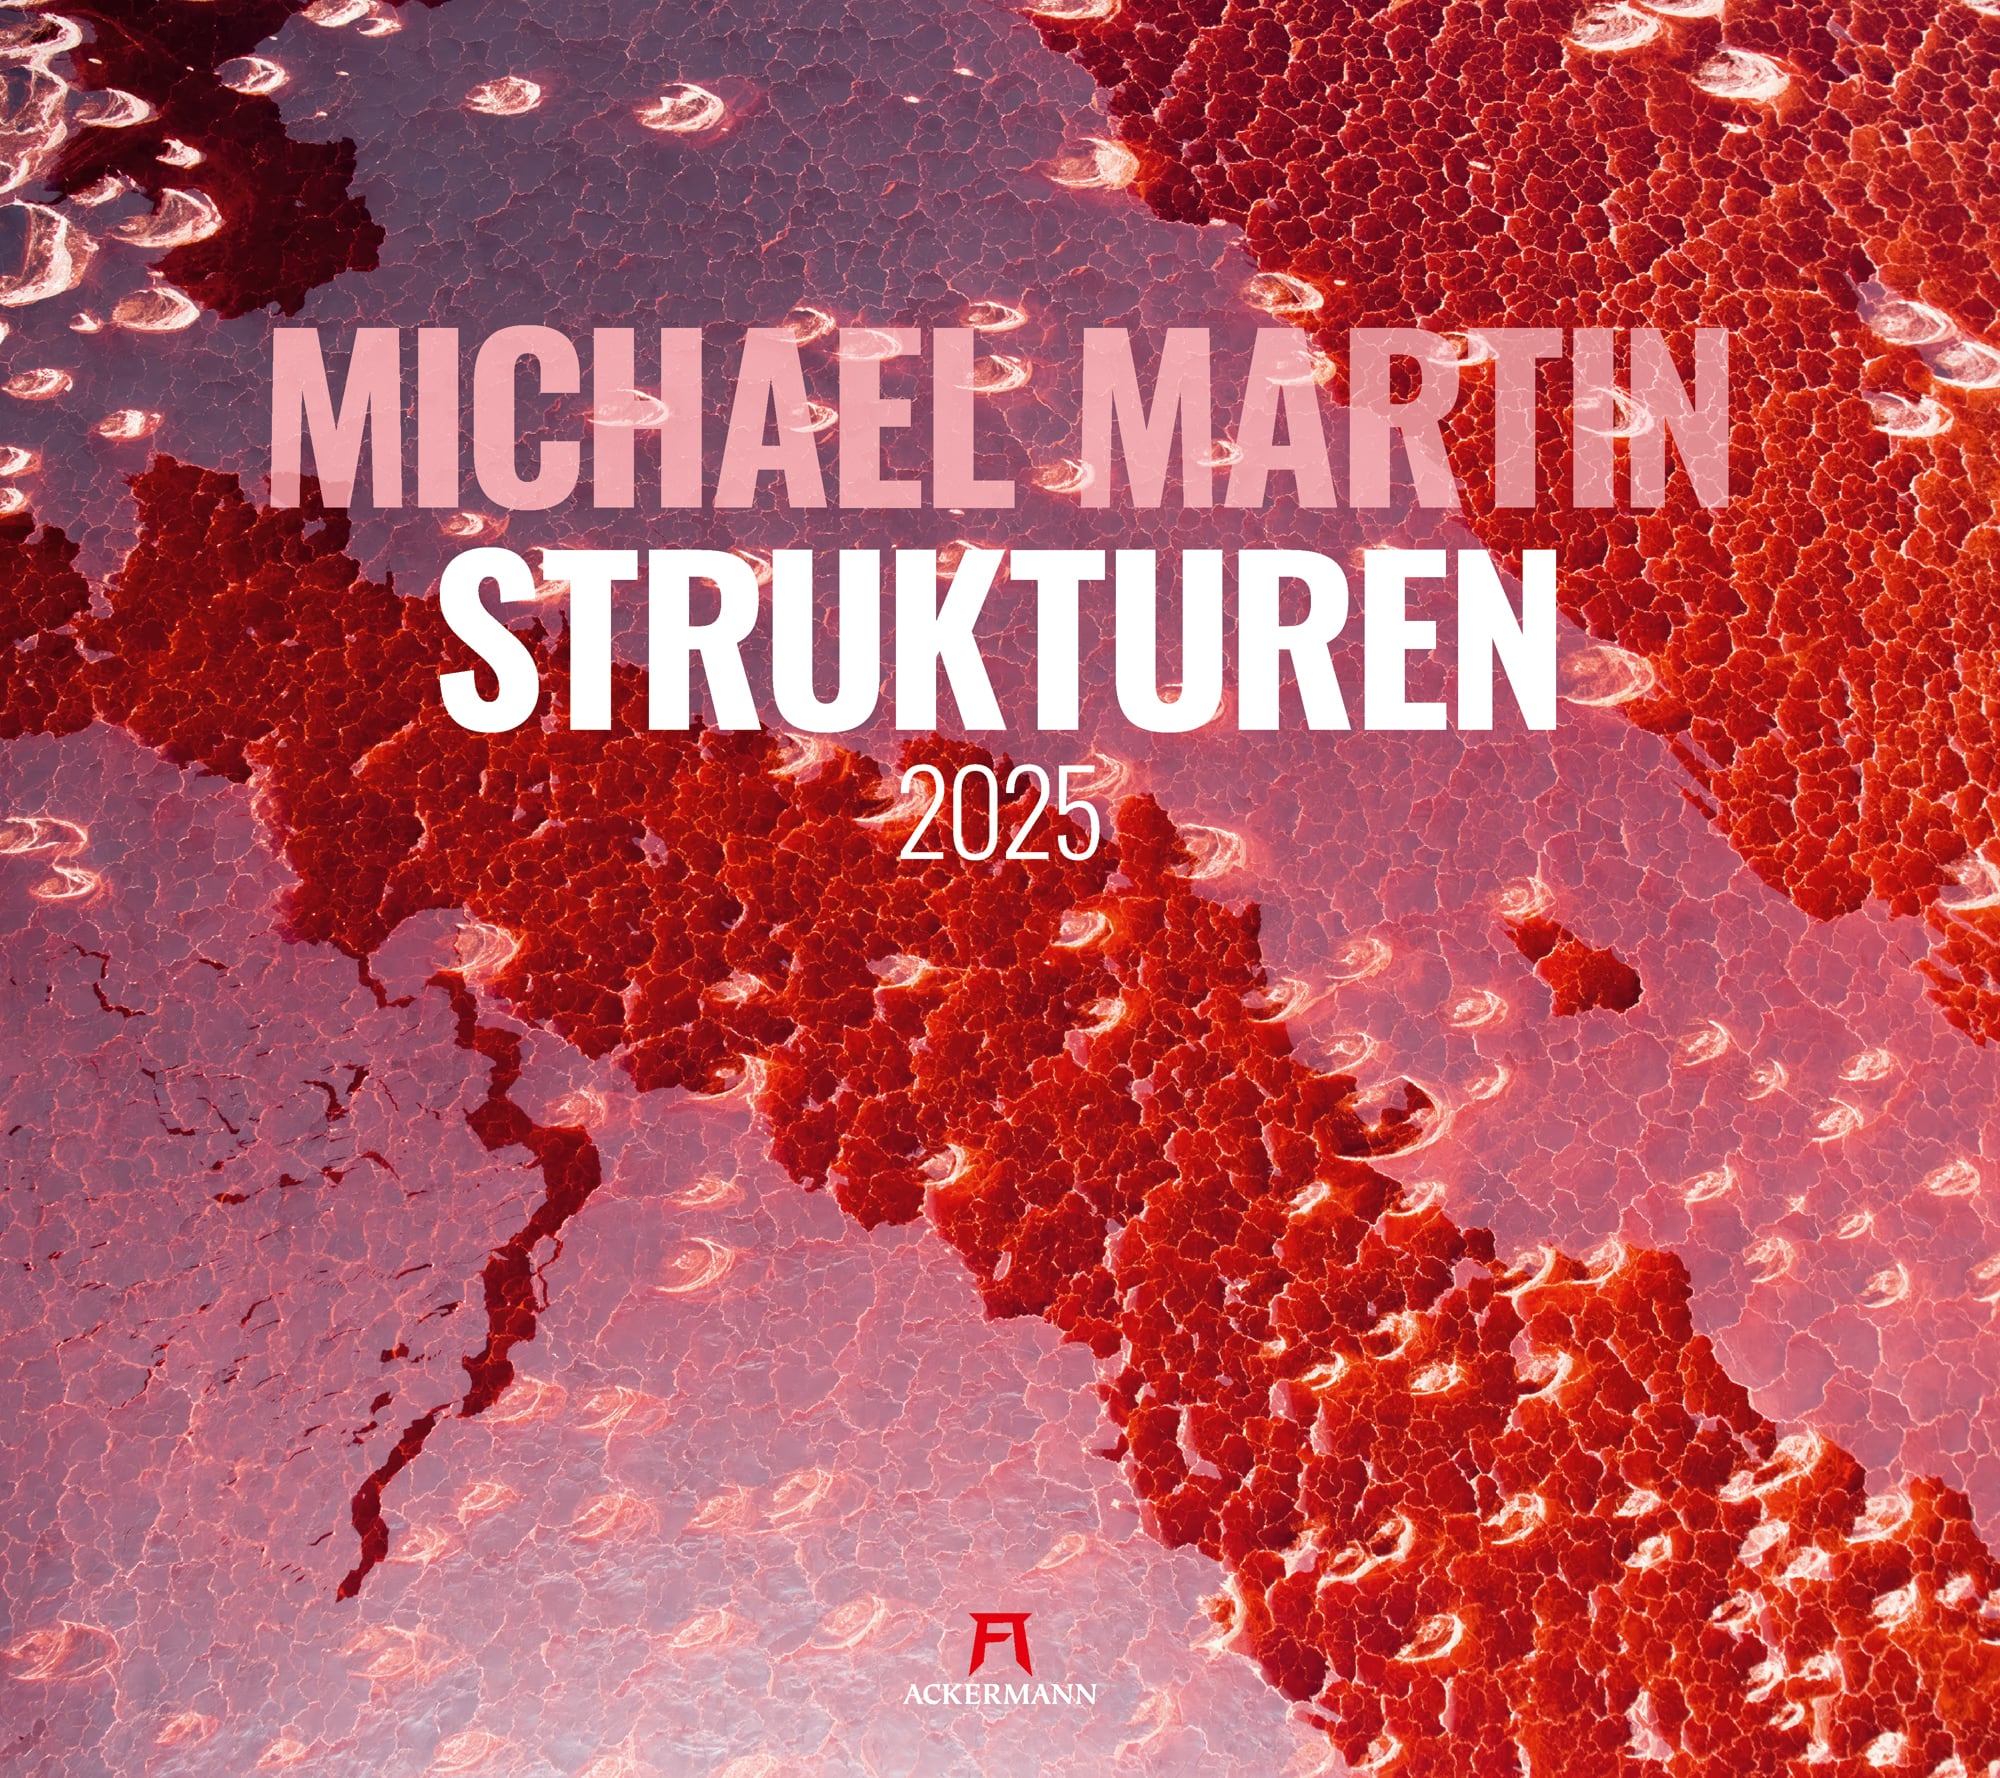 Ackermann Kalender Strukturen - Michael Martin 2025 - Titelblatt